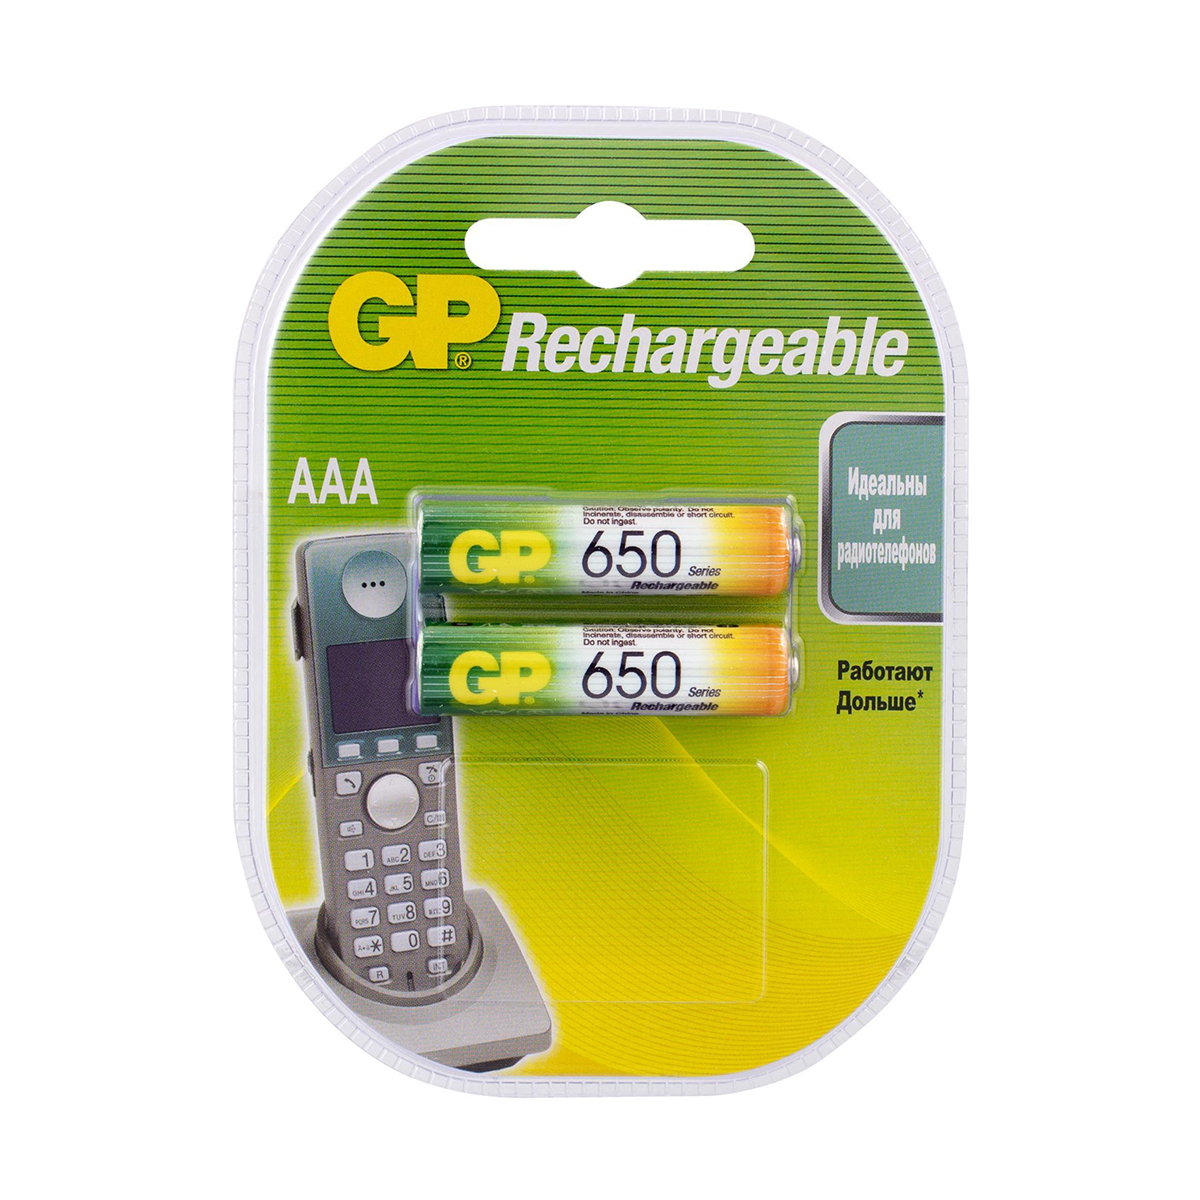 Аккумулятор gp rechargeable 65aaahc-5decrc2  тип ааа, 650 мач (2 шт. в блистере) (1/10/100)